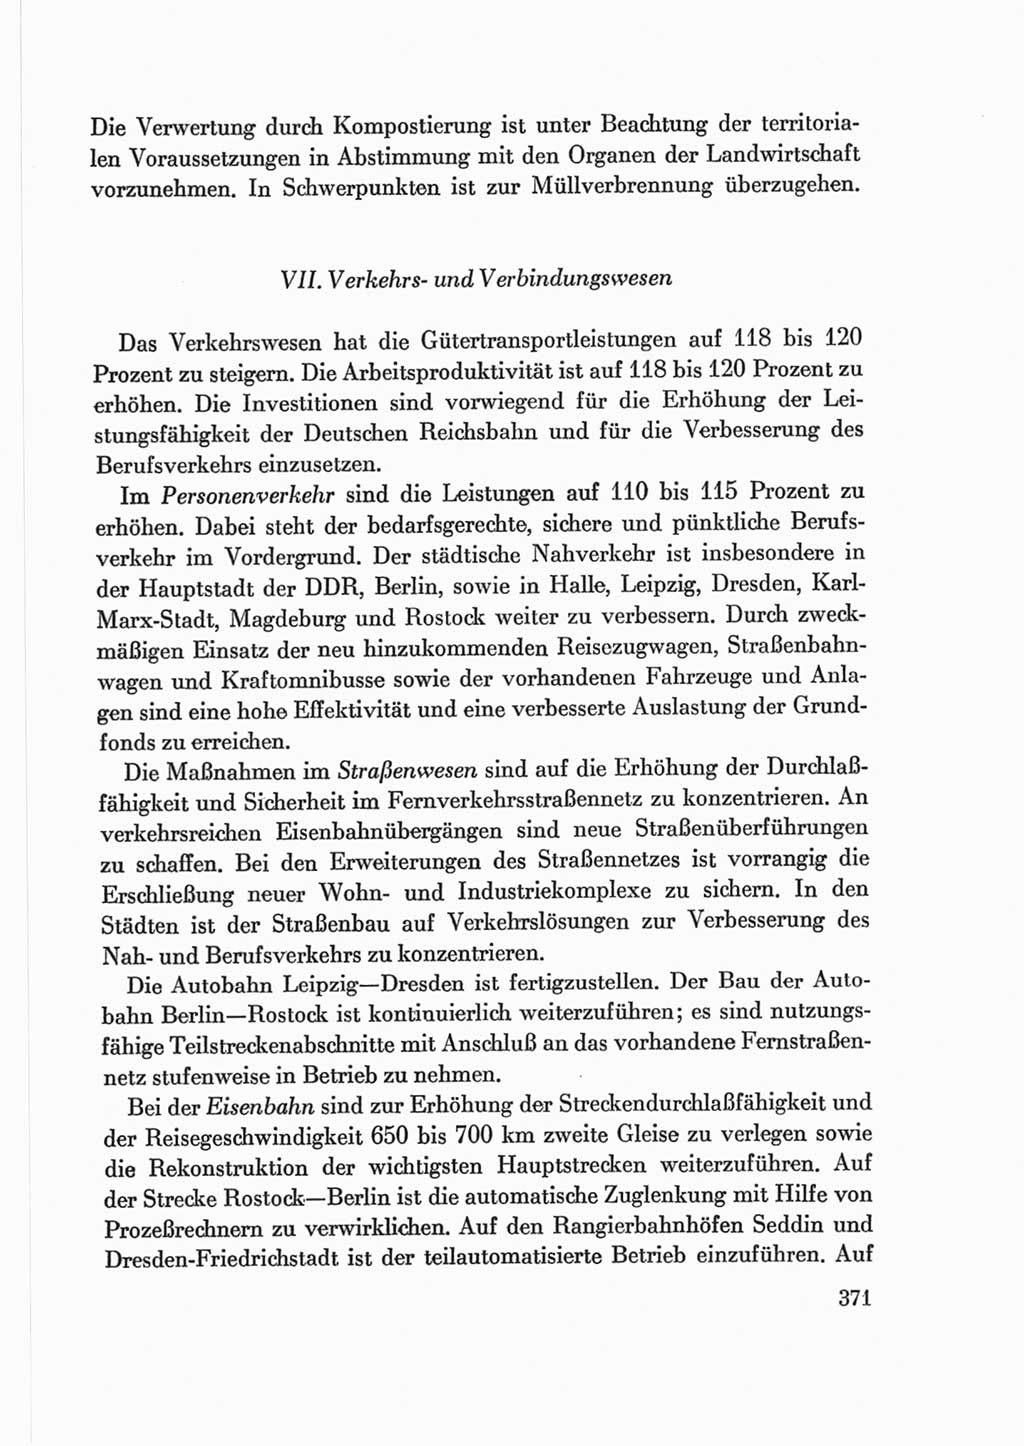 Protokoll der Verhandlungen des Ⅷ. Parteitages der Sozialistischen Einheitspartei Deutschlands (SED) [Deutsche Demokratische Republik (DDR)] 1971, Band 2, Seite 371 (Prot. Verh. Ⅷ. PT SED DDR 1971, Bd. 2, S. 371)